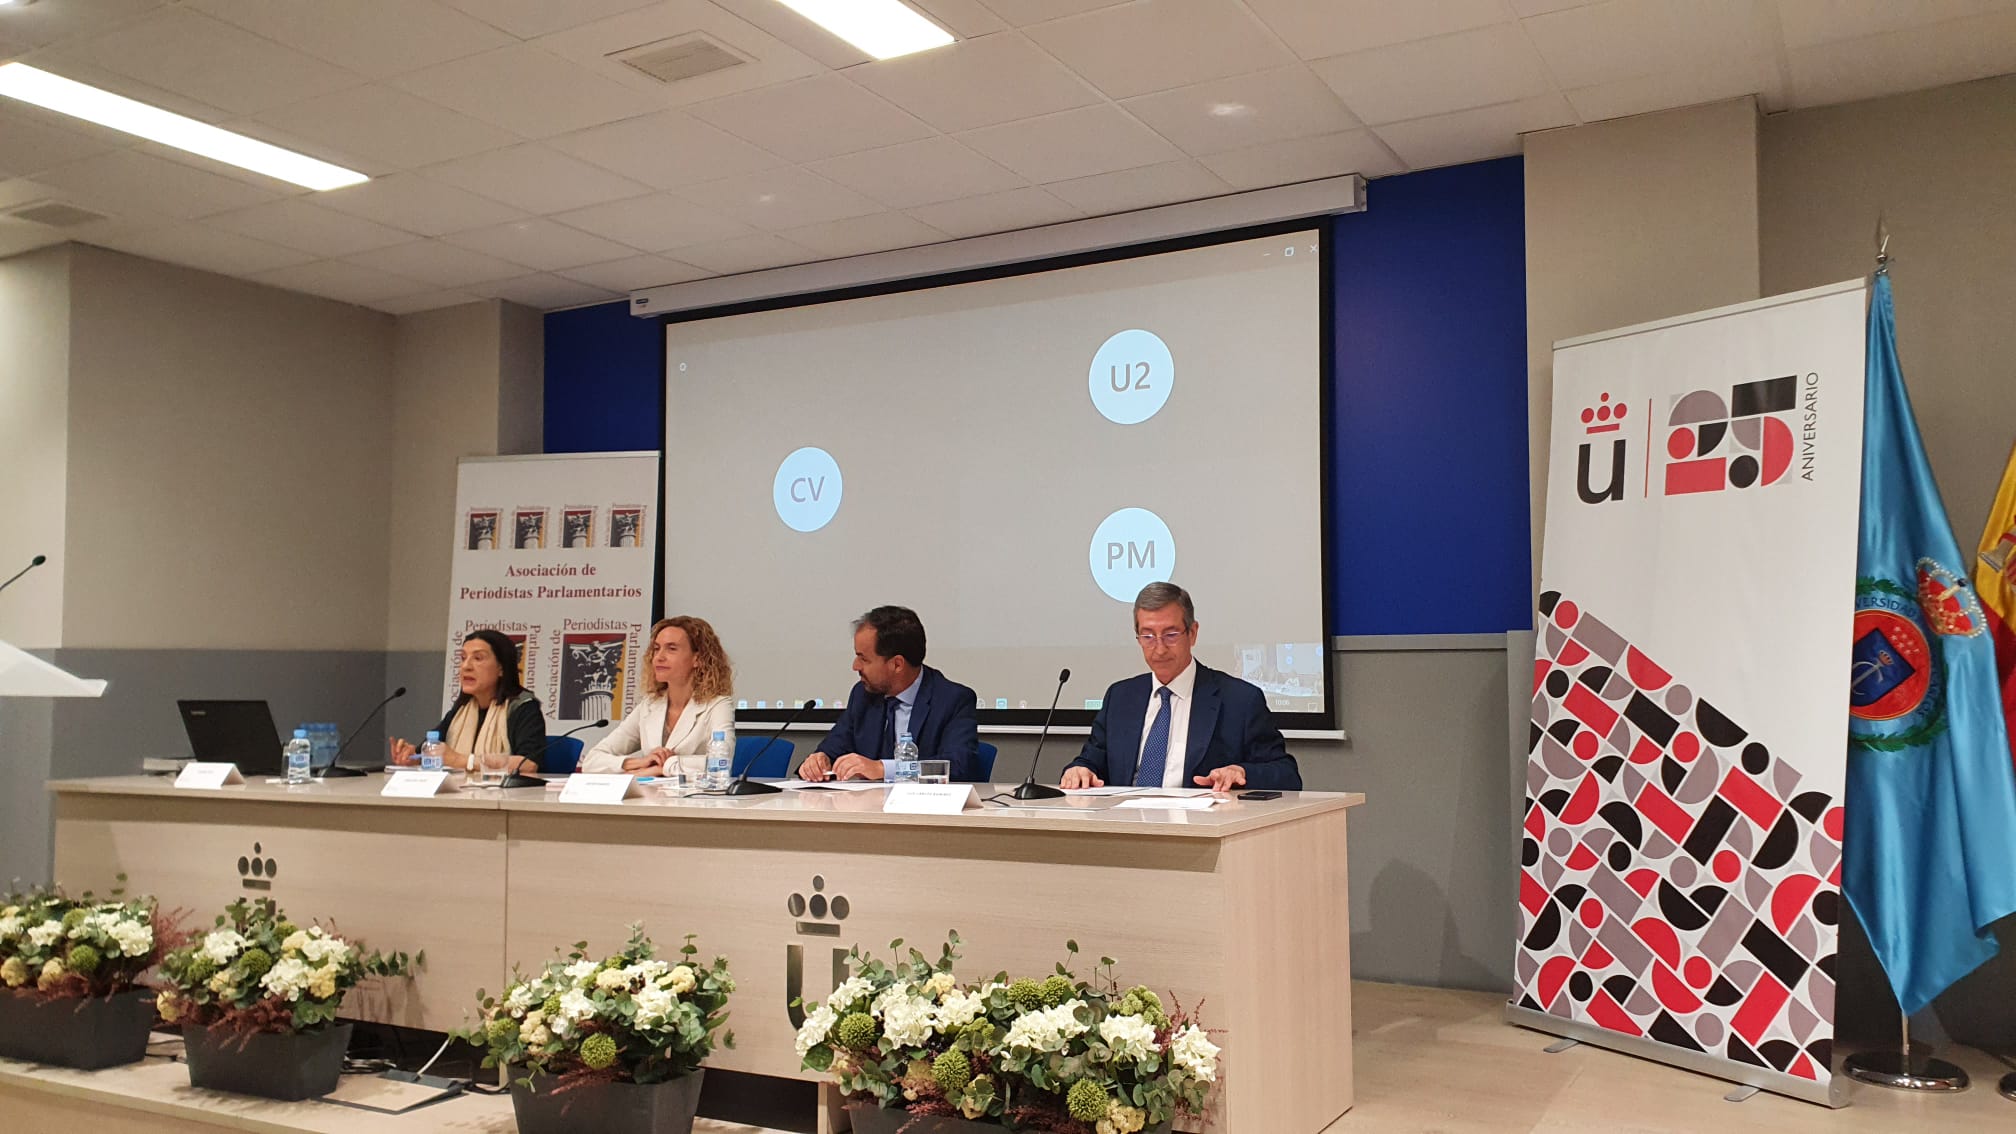 La presidenta del Congreso de los Diputados, Meritxell Batet, inaugura el curso de verano de la Asociación de Periodistas Parlamentarios en la Universidad Rey Juan Carlos.